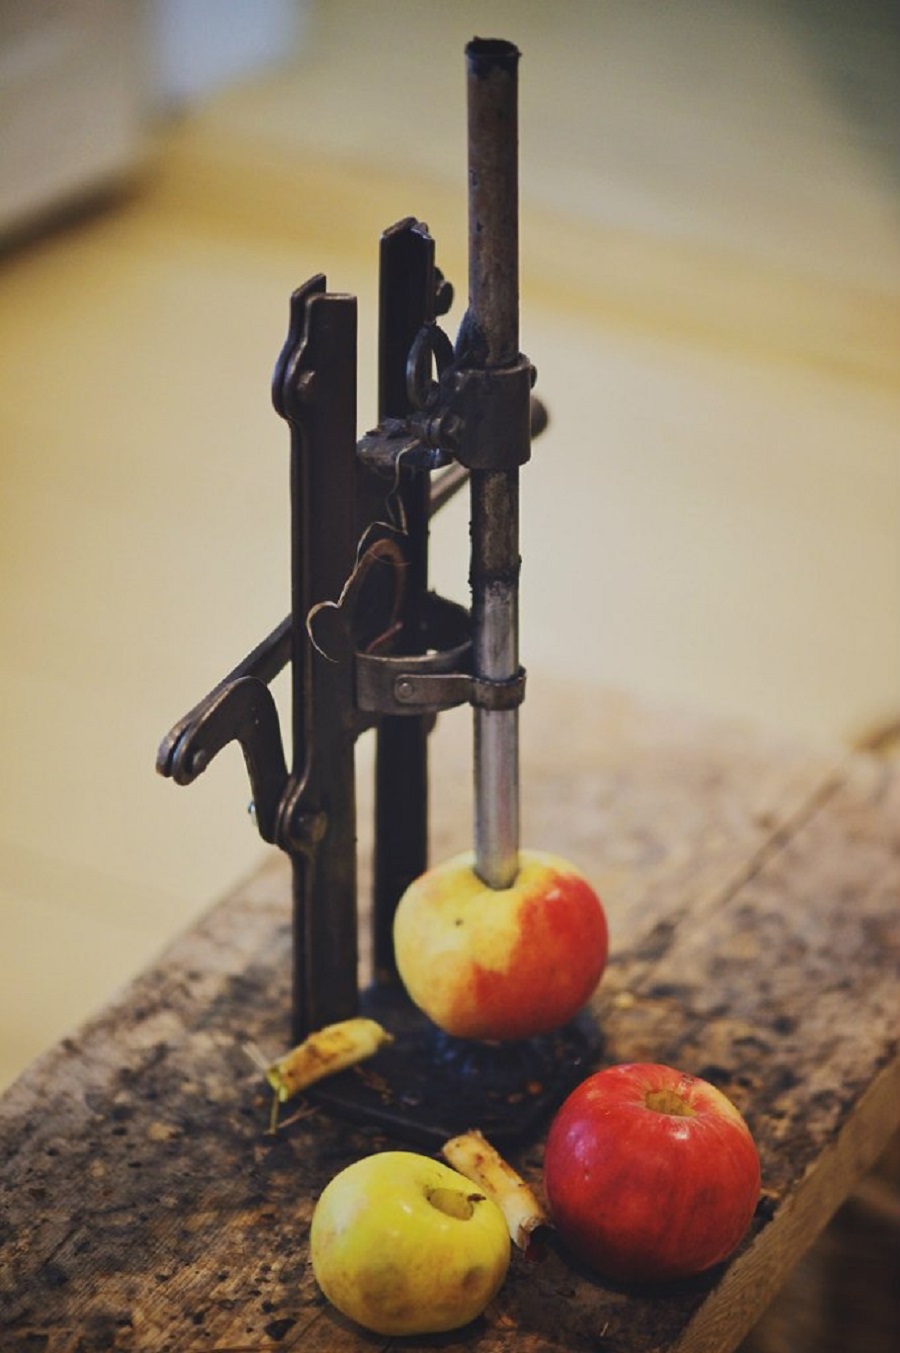 Инструмент для удаления сердцевины яблок. Фото: музей «Коломенская пастила» во ВКонтакте